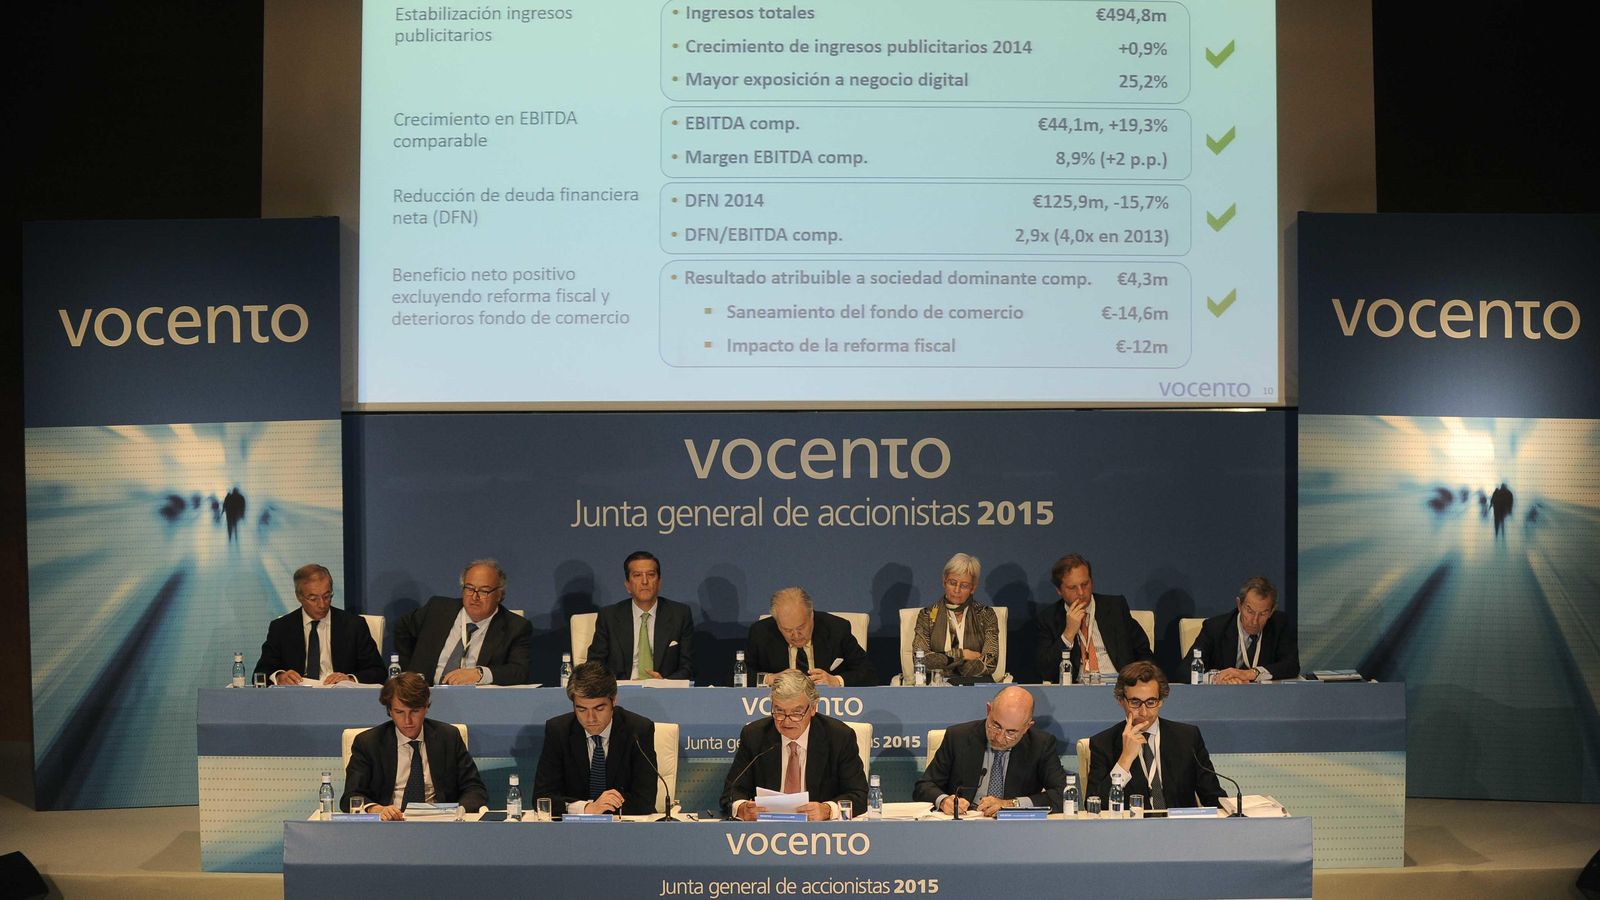 Foto: Santiago Bergareche y Luis Enríquez en la junta general de accionistas de Vocento 2015.